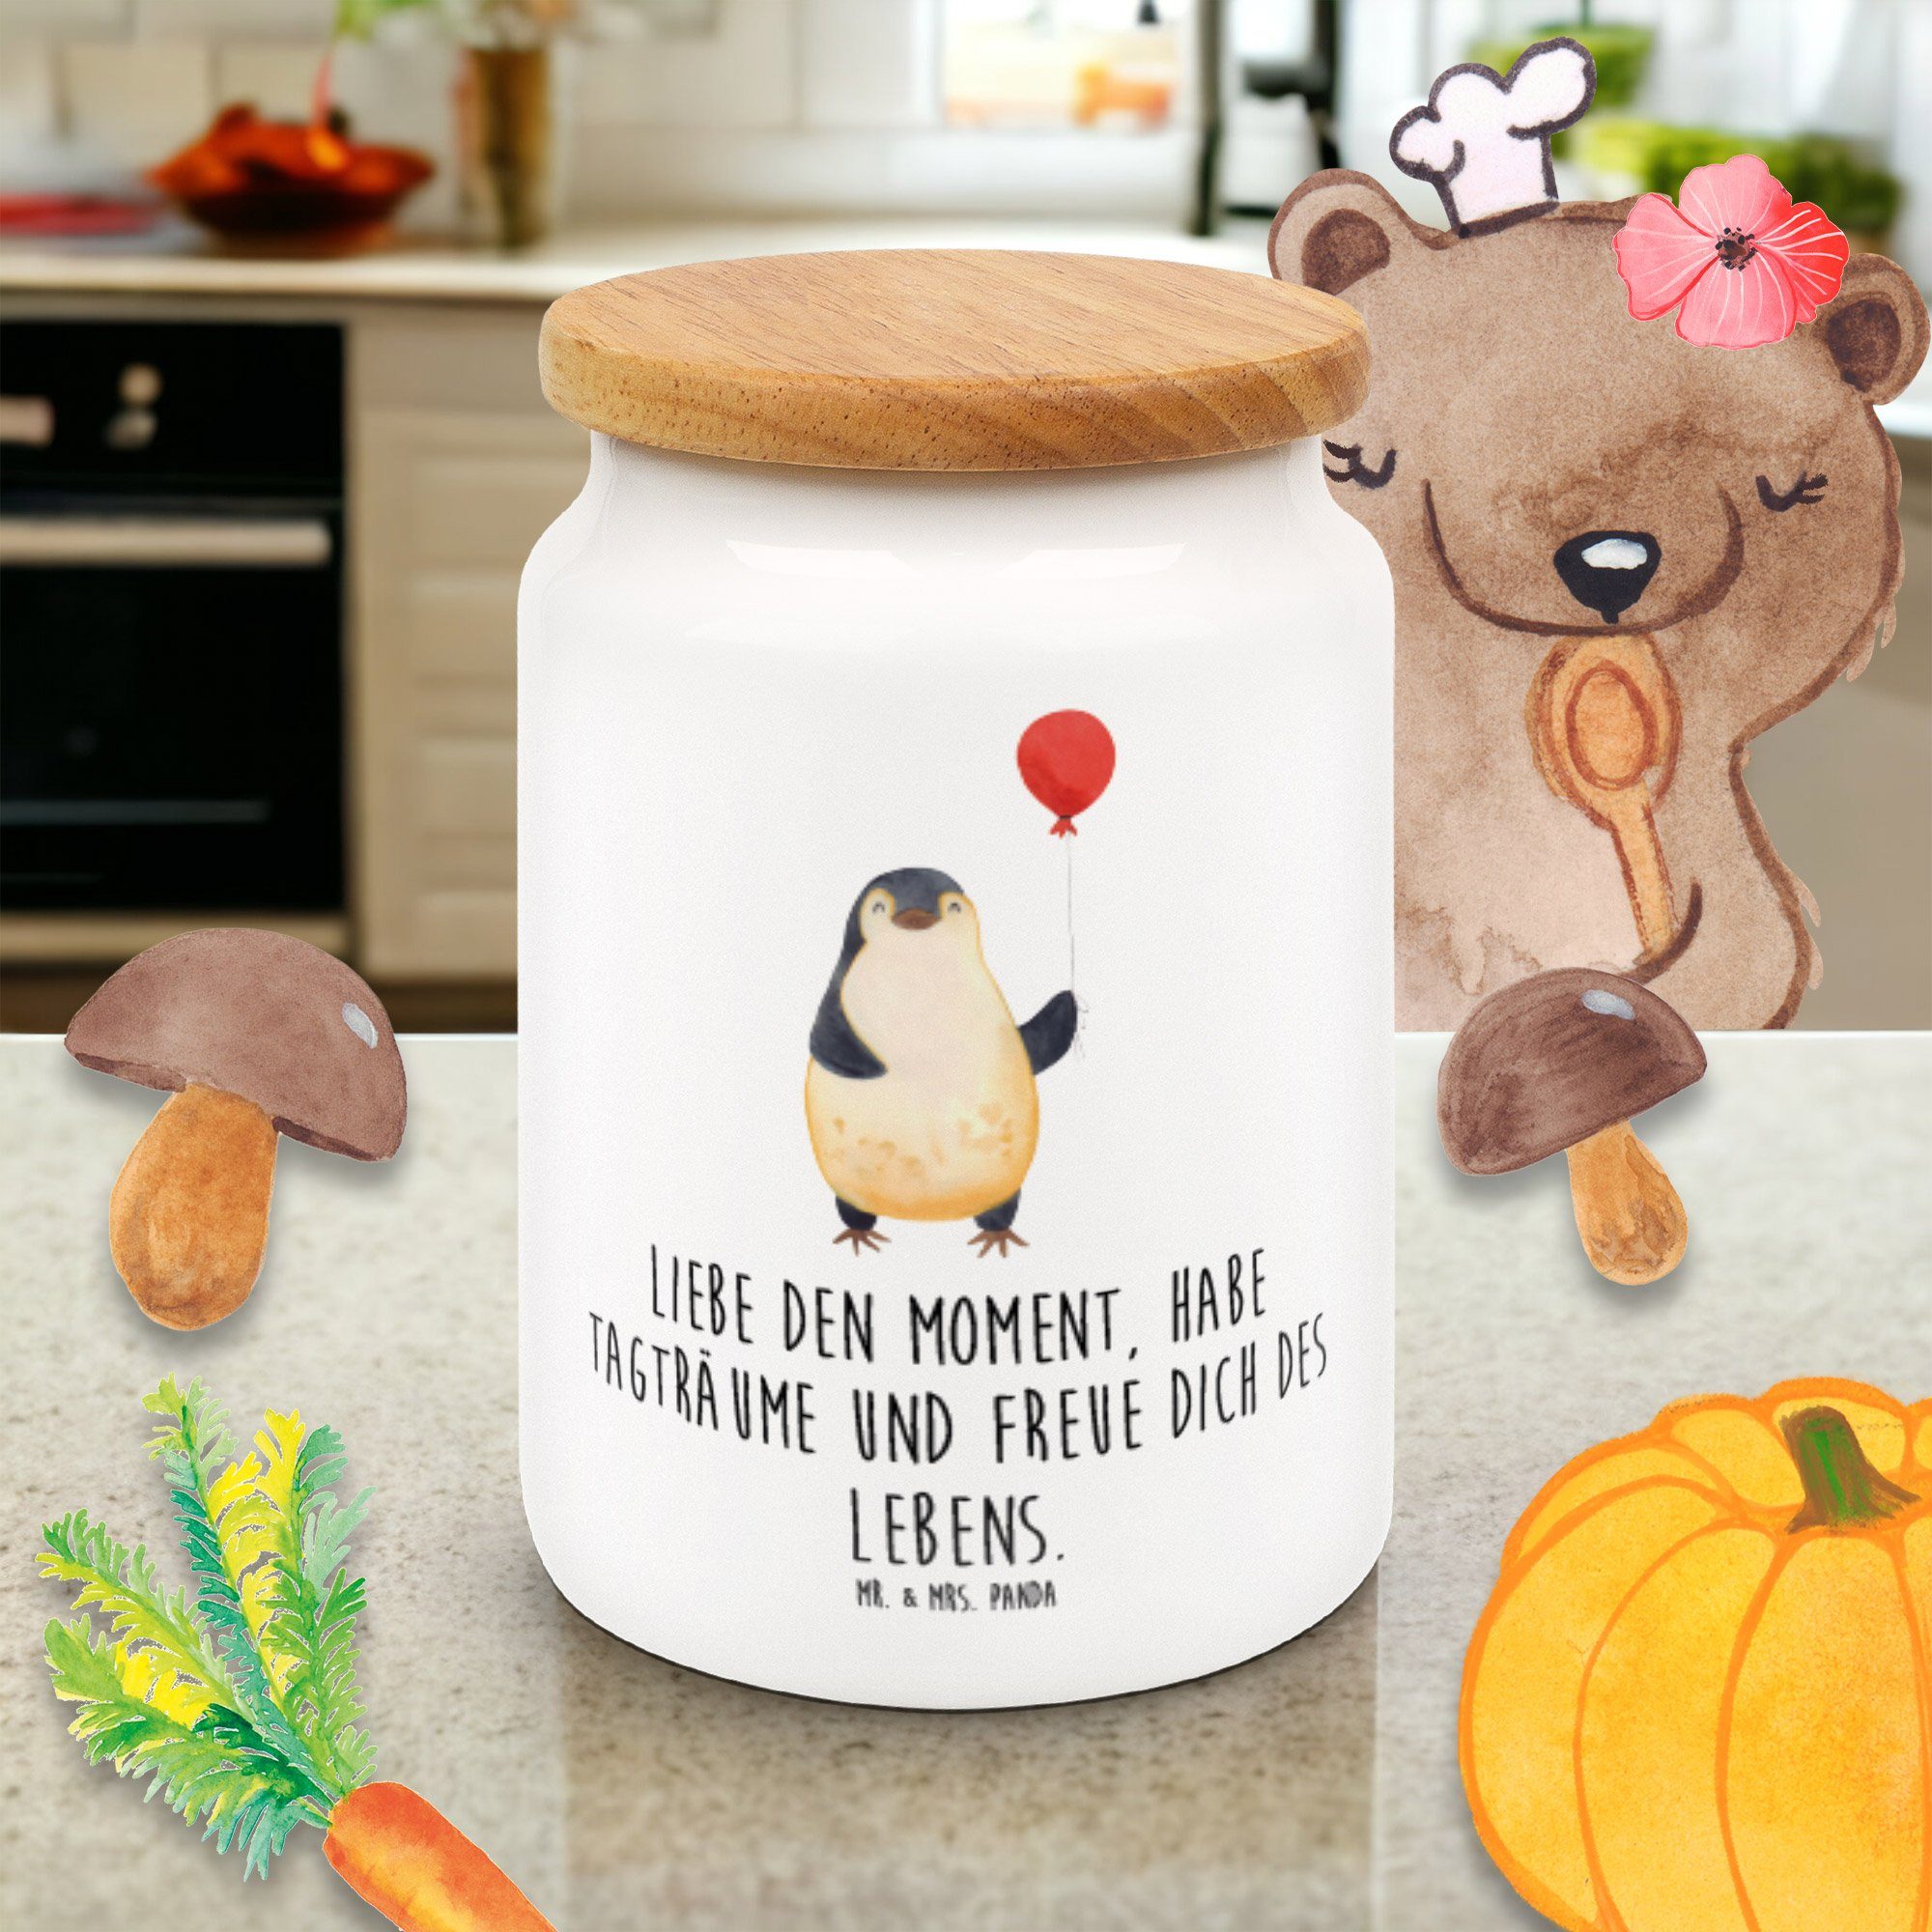 Mr. - Weiß Kind, - & Mrs. Keramikdose, neues Keramik, Geschenk, Pinguin Vorratsdose (1-tlg) Luftballon Panda Leben,